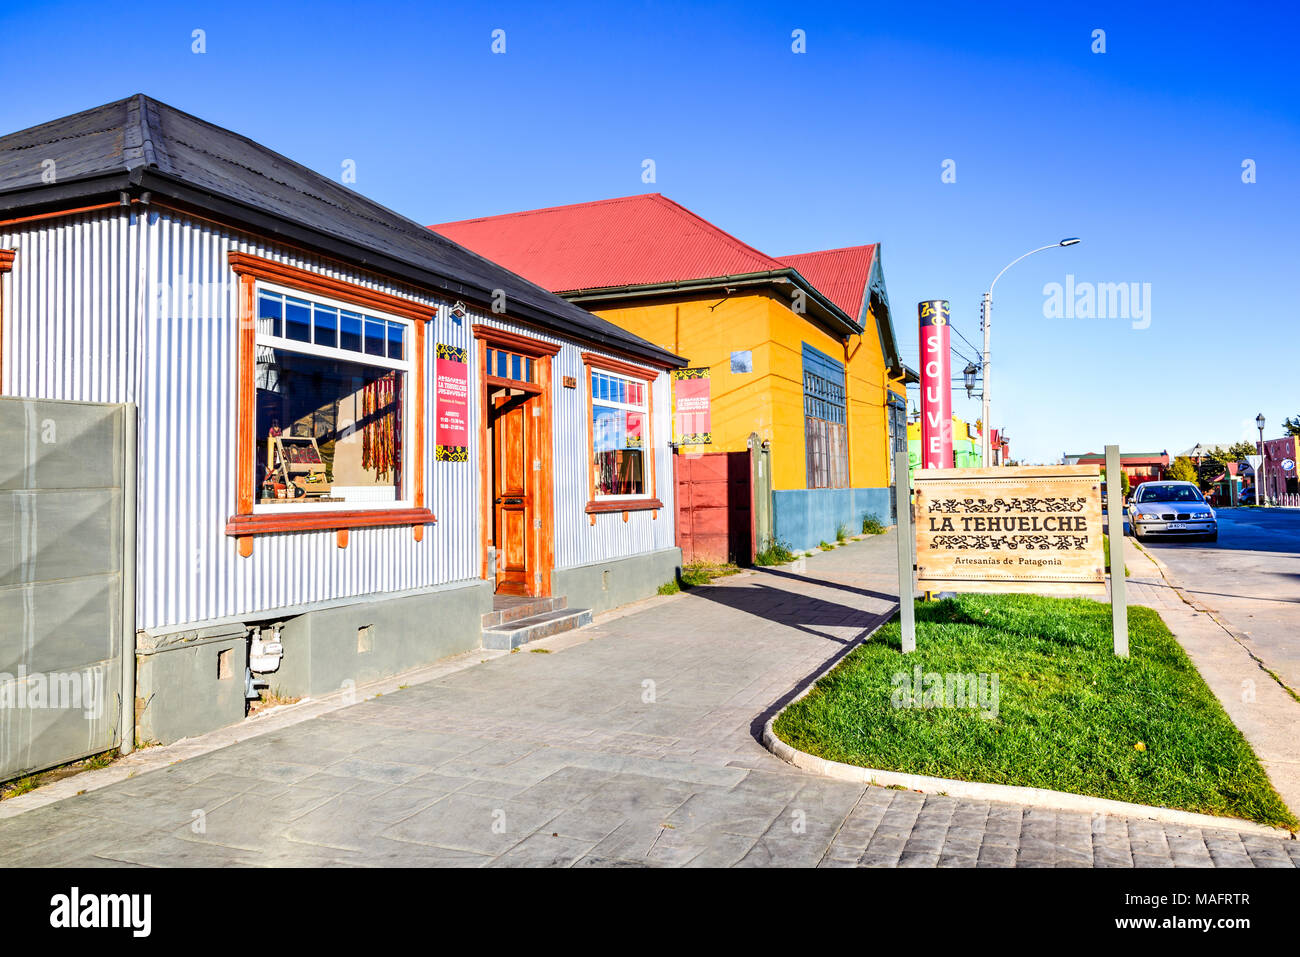 Puerto Natales, Chile - Abril 2017: panorama urbano de la ciudad de Puerto Natales, Patagonia sur ciudad, puerta principal de Torres del Paine, monumento histórico nacional. Foto de stock